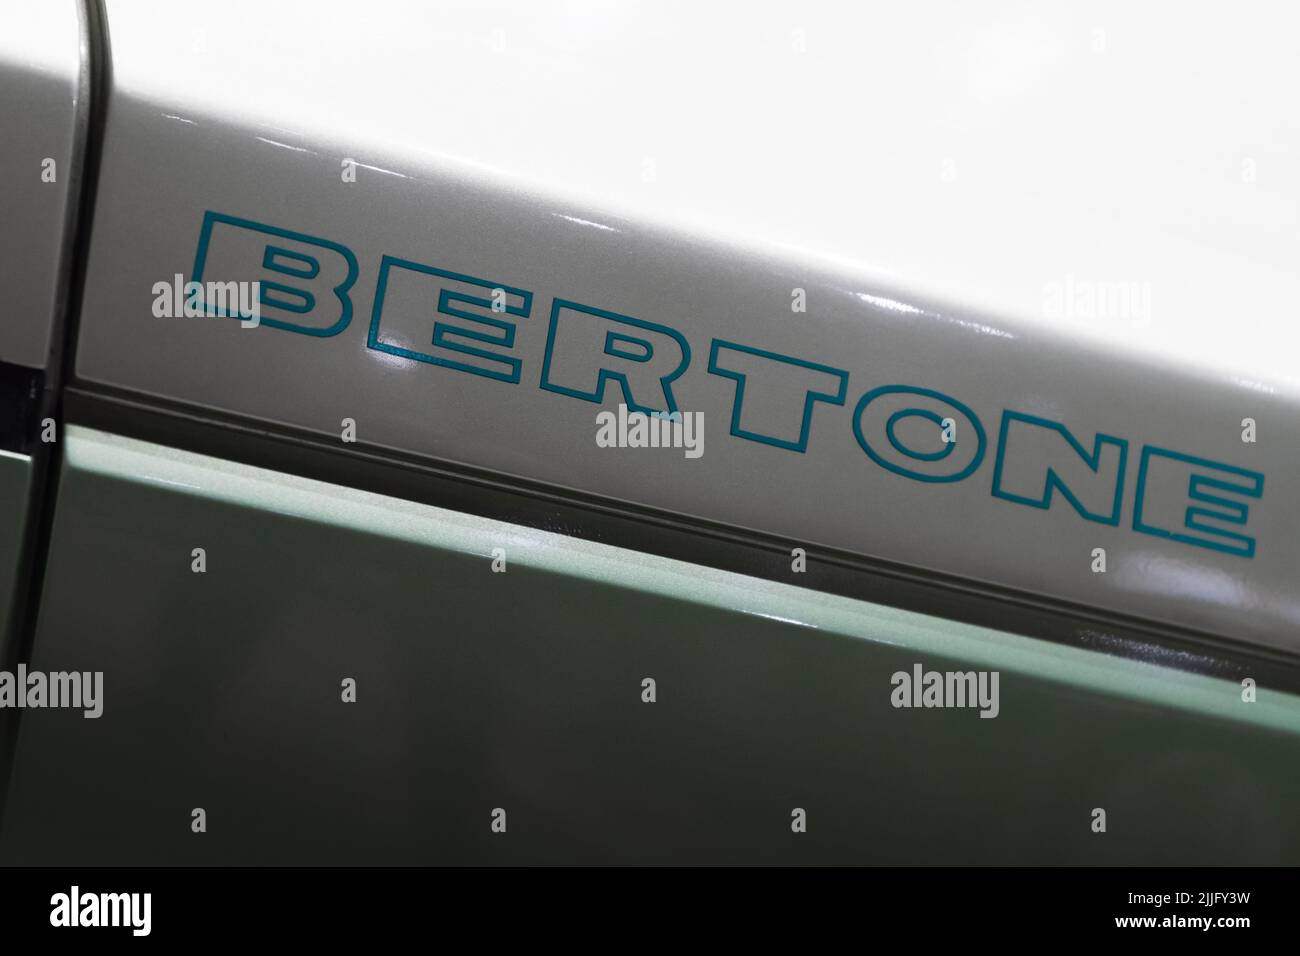 St-Petersburg, Russia - 29 gennaio 2021: Il logo del marchio della società automobilistica italiana Bertone è su carrozzeria sportiva grigia lucida Foto Stock